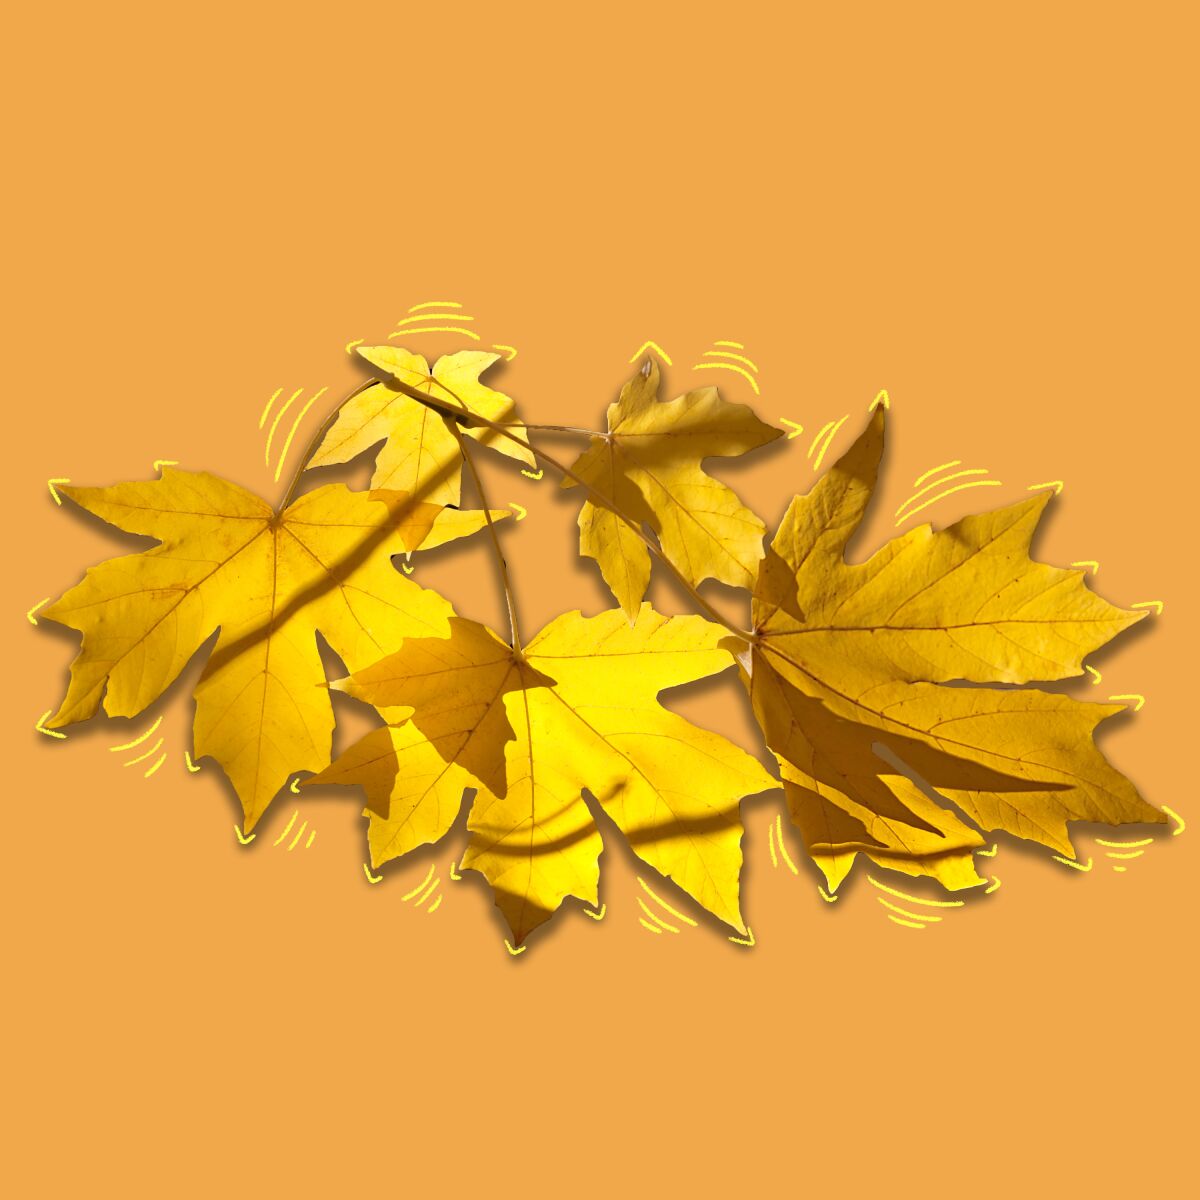 Big-leaf maple leaves.